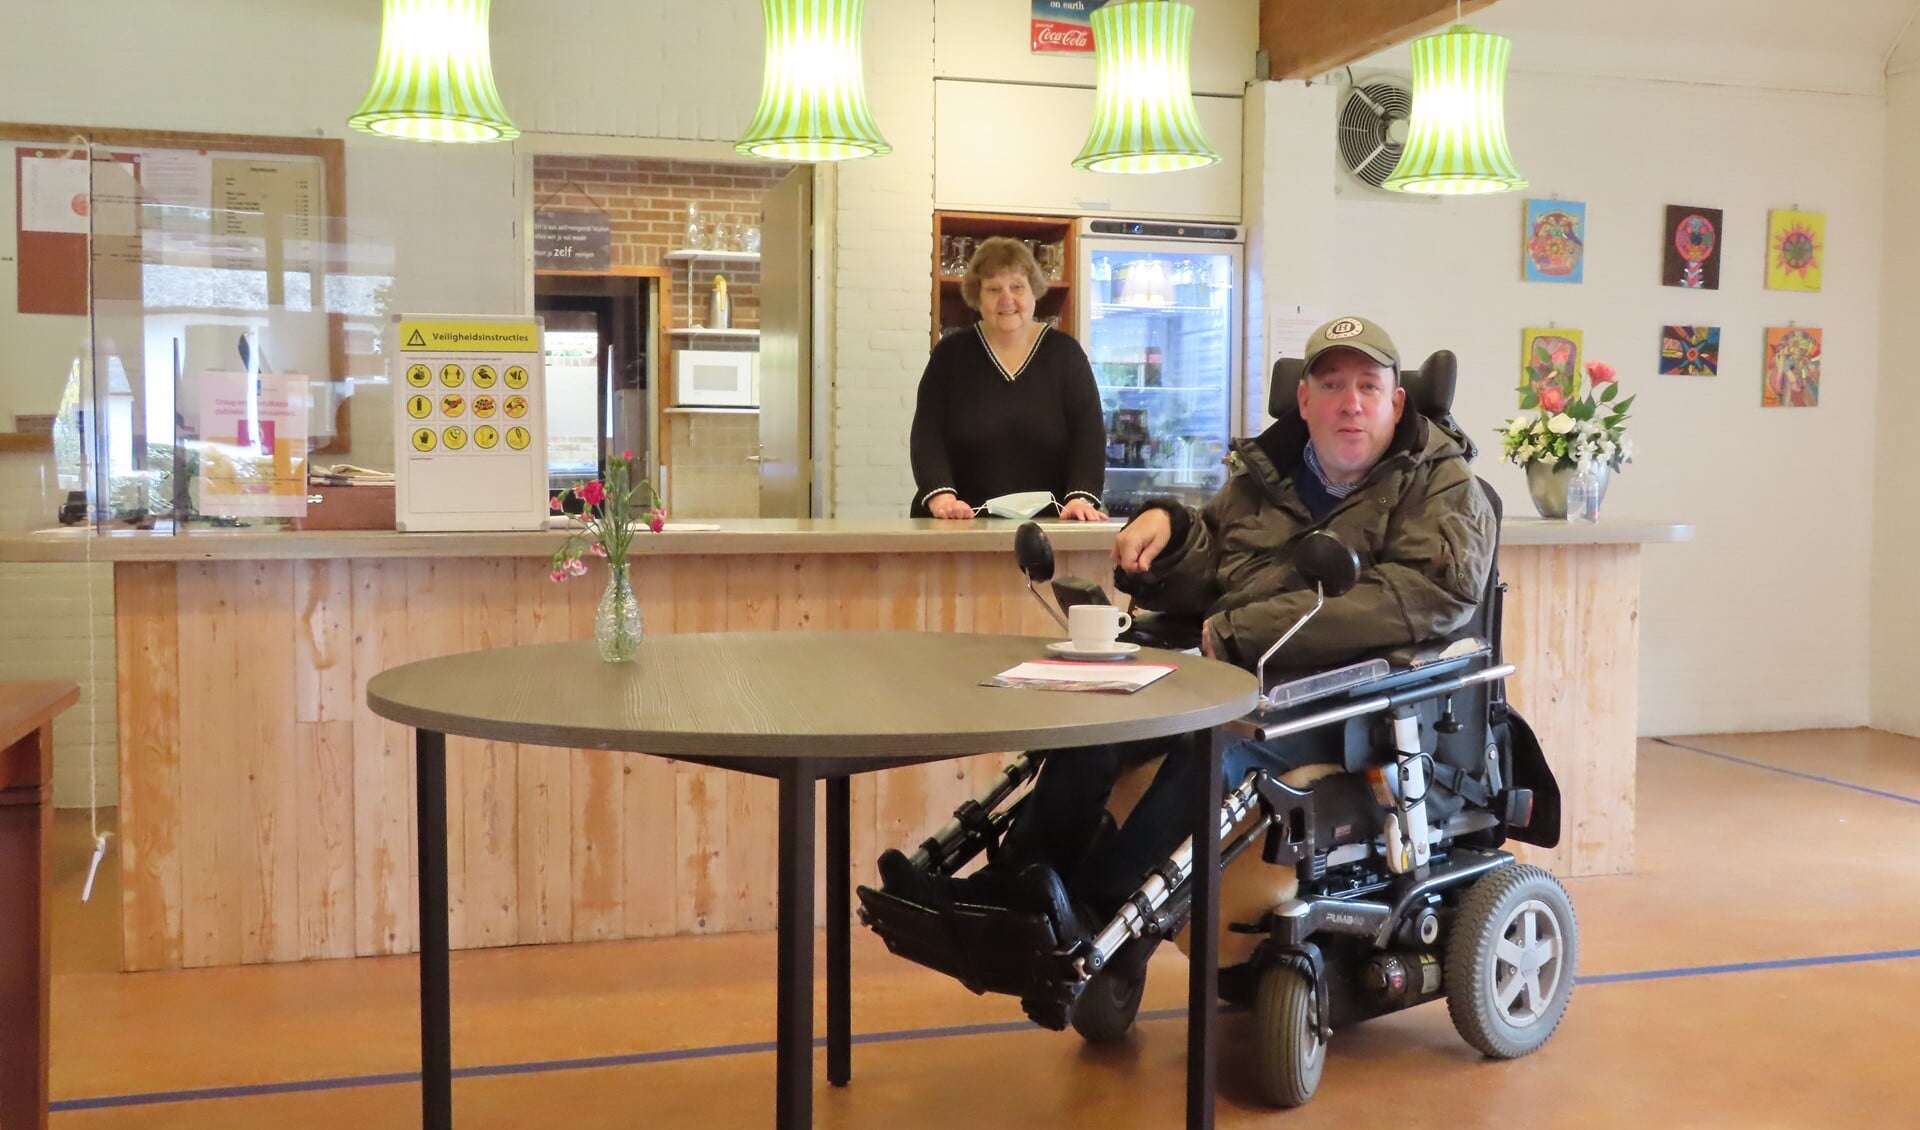 Wijkcentrum 't Vûronger beschikt nu ook over twee hogere tafels, waar mensen in een rolstoel goed onder kunnen rijden.